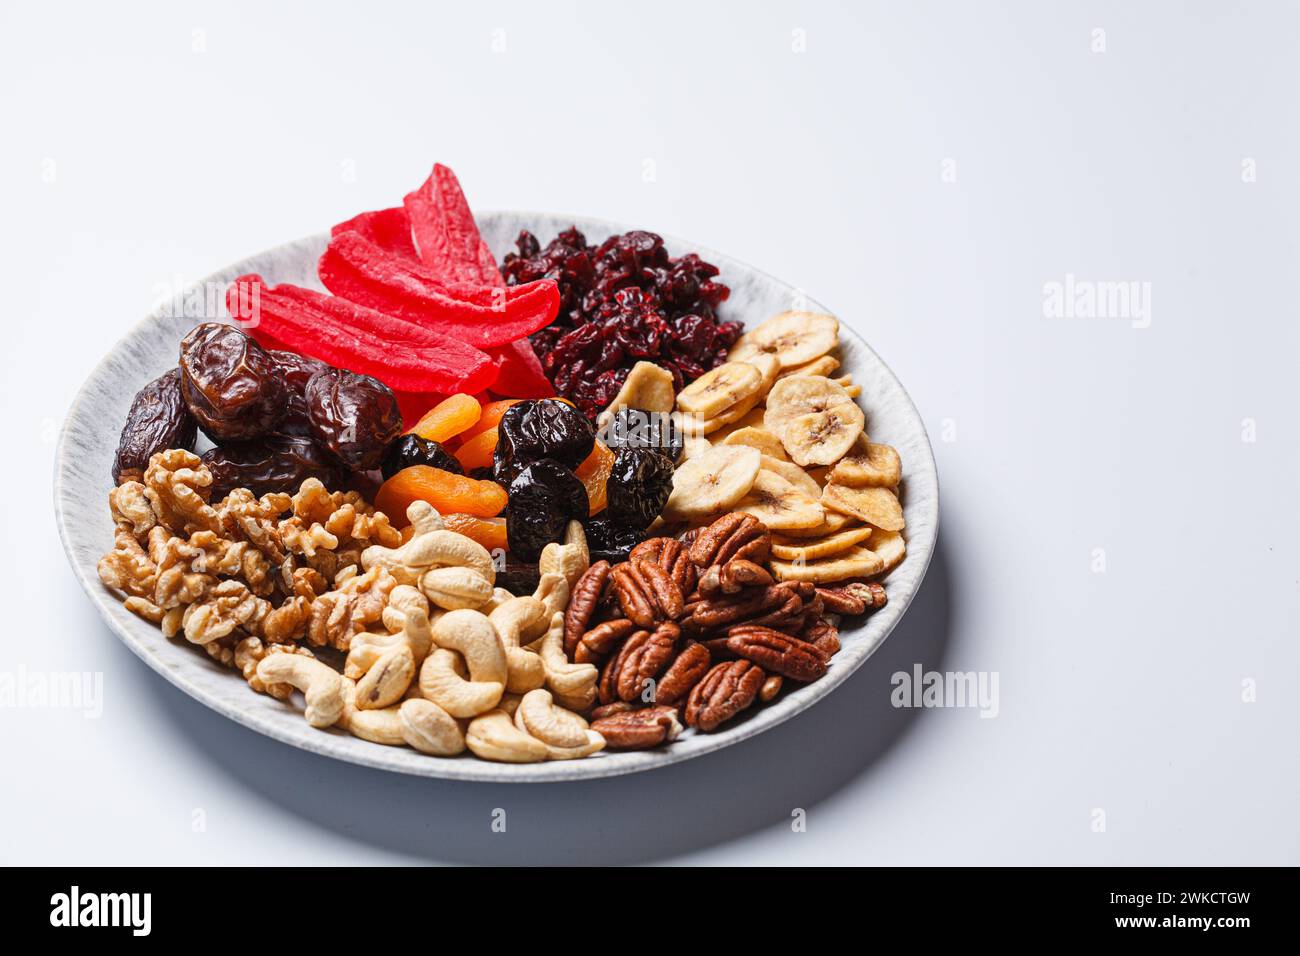 Fruits secs et noix sur une assiette pour célébrer la fête juive tu Bi Shevat. Banque D'Images